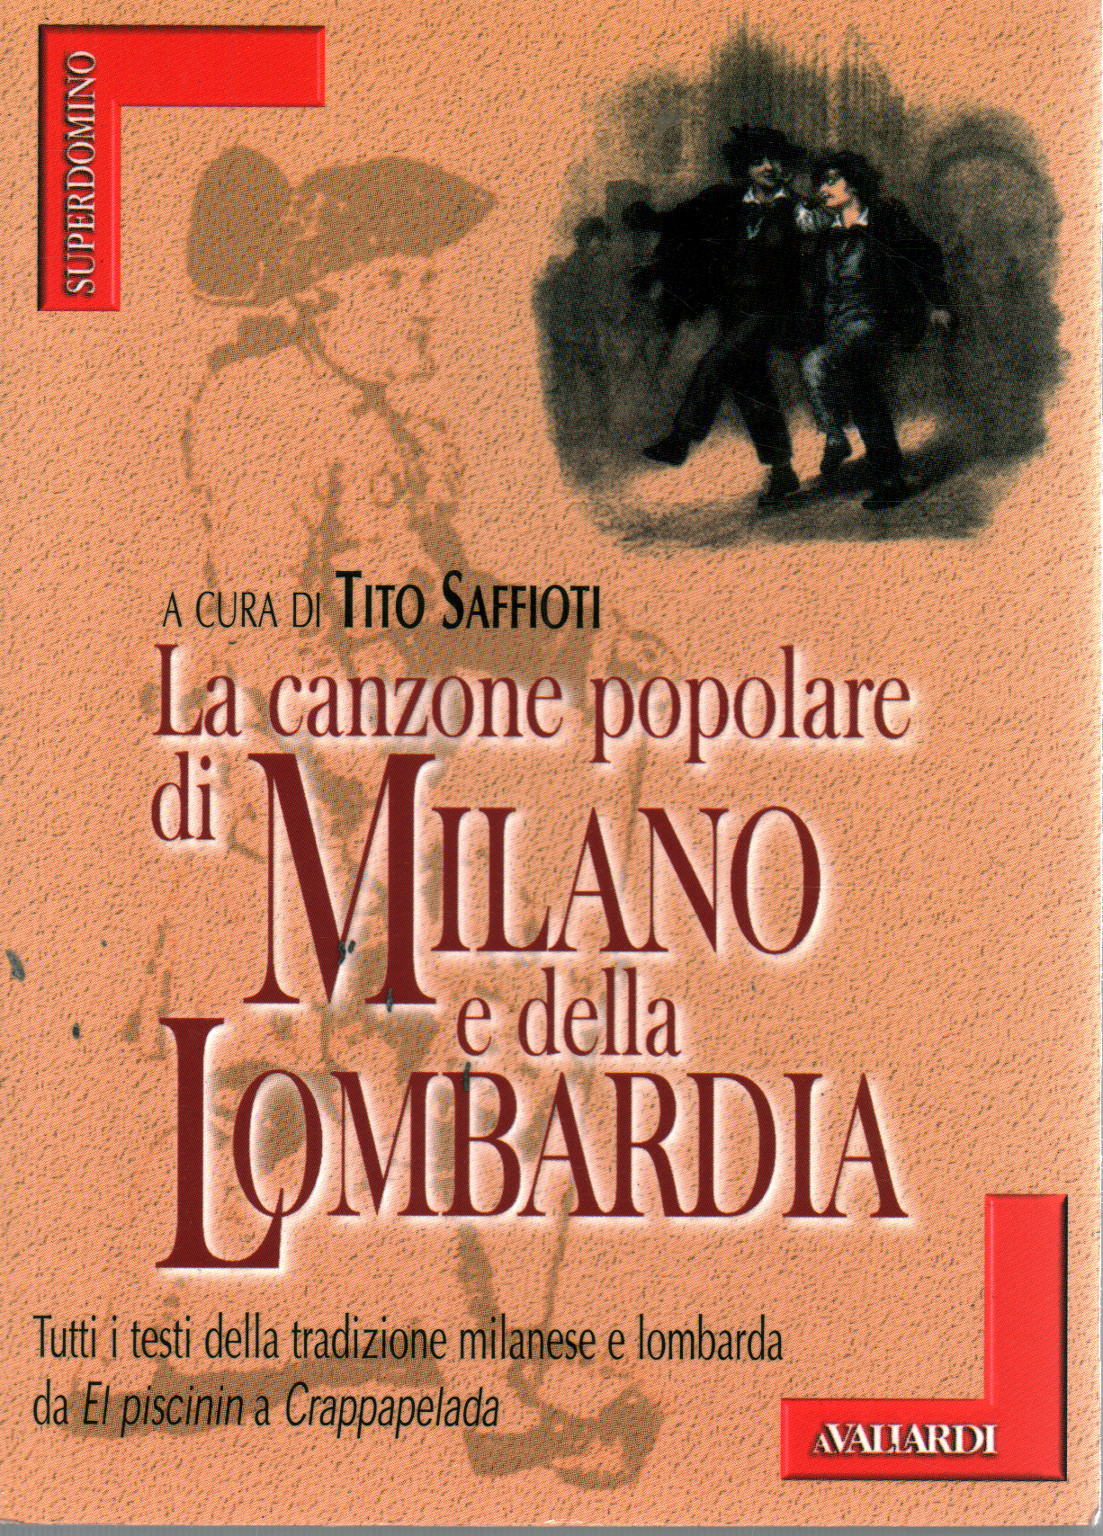 La canzone popolare di Milano e della Lombardia, s.a.